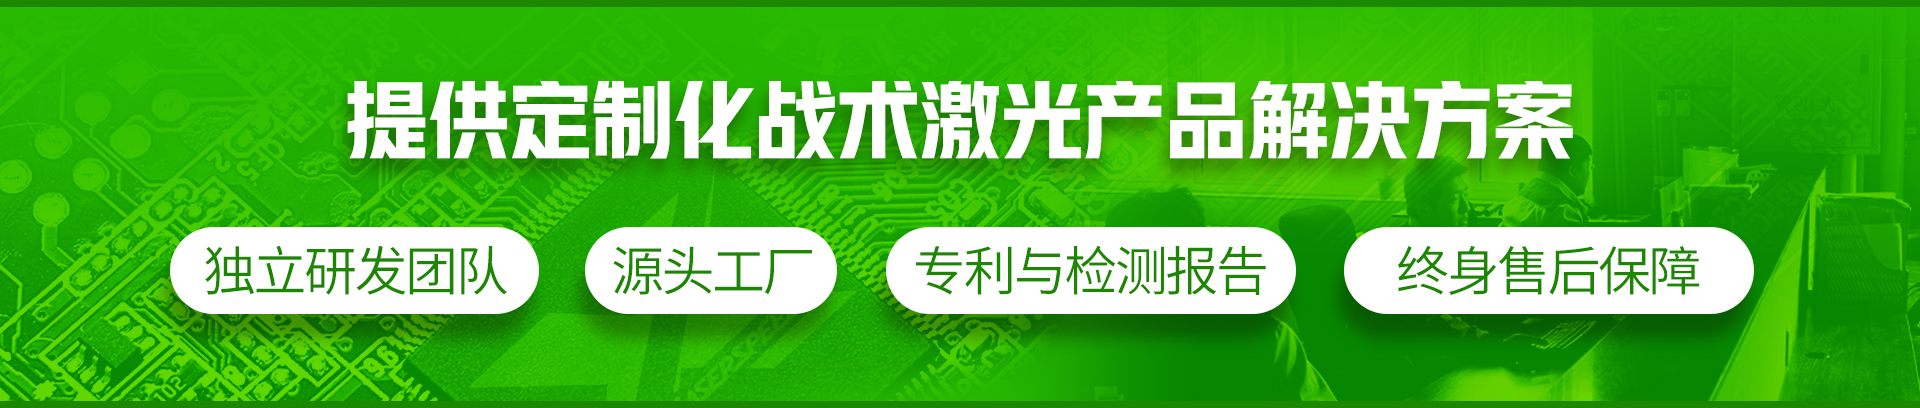 关于当前产品12b体育官网·(中国)官方网站的成功案例等相关图片